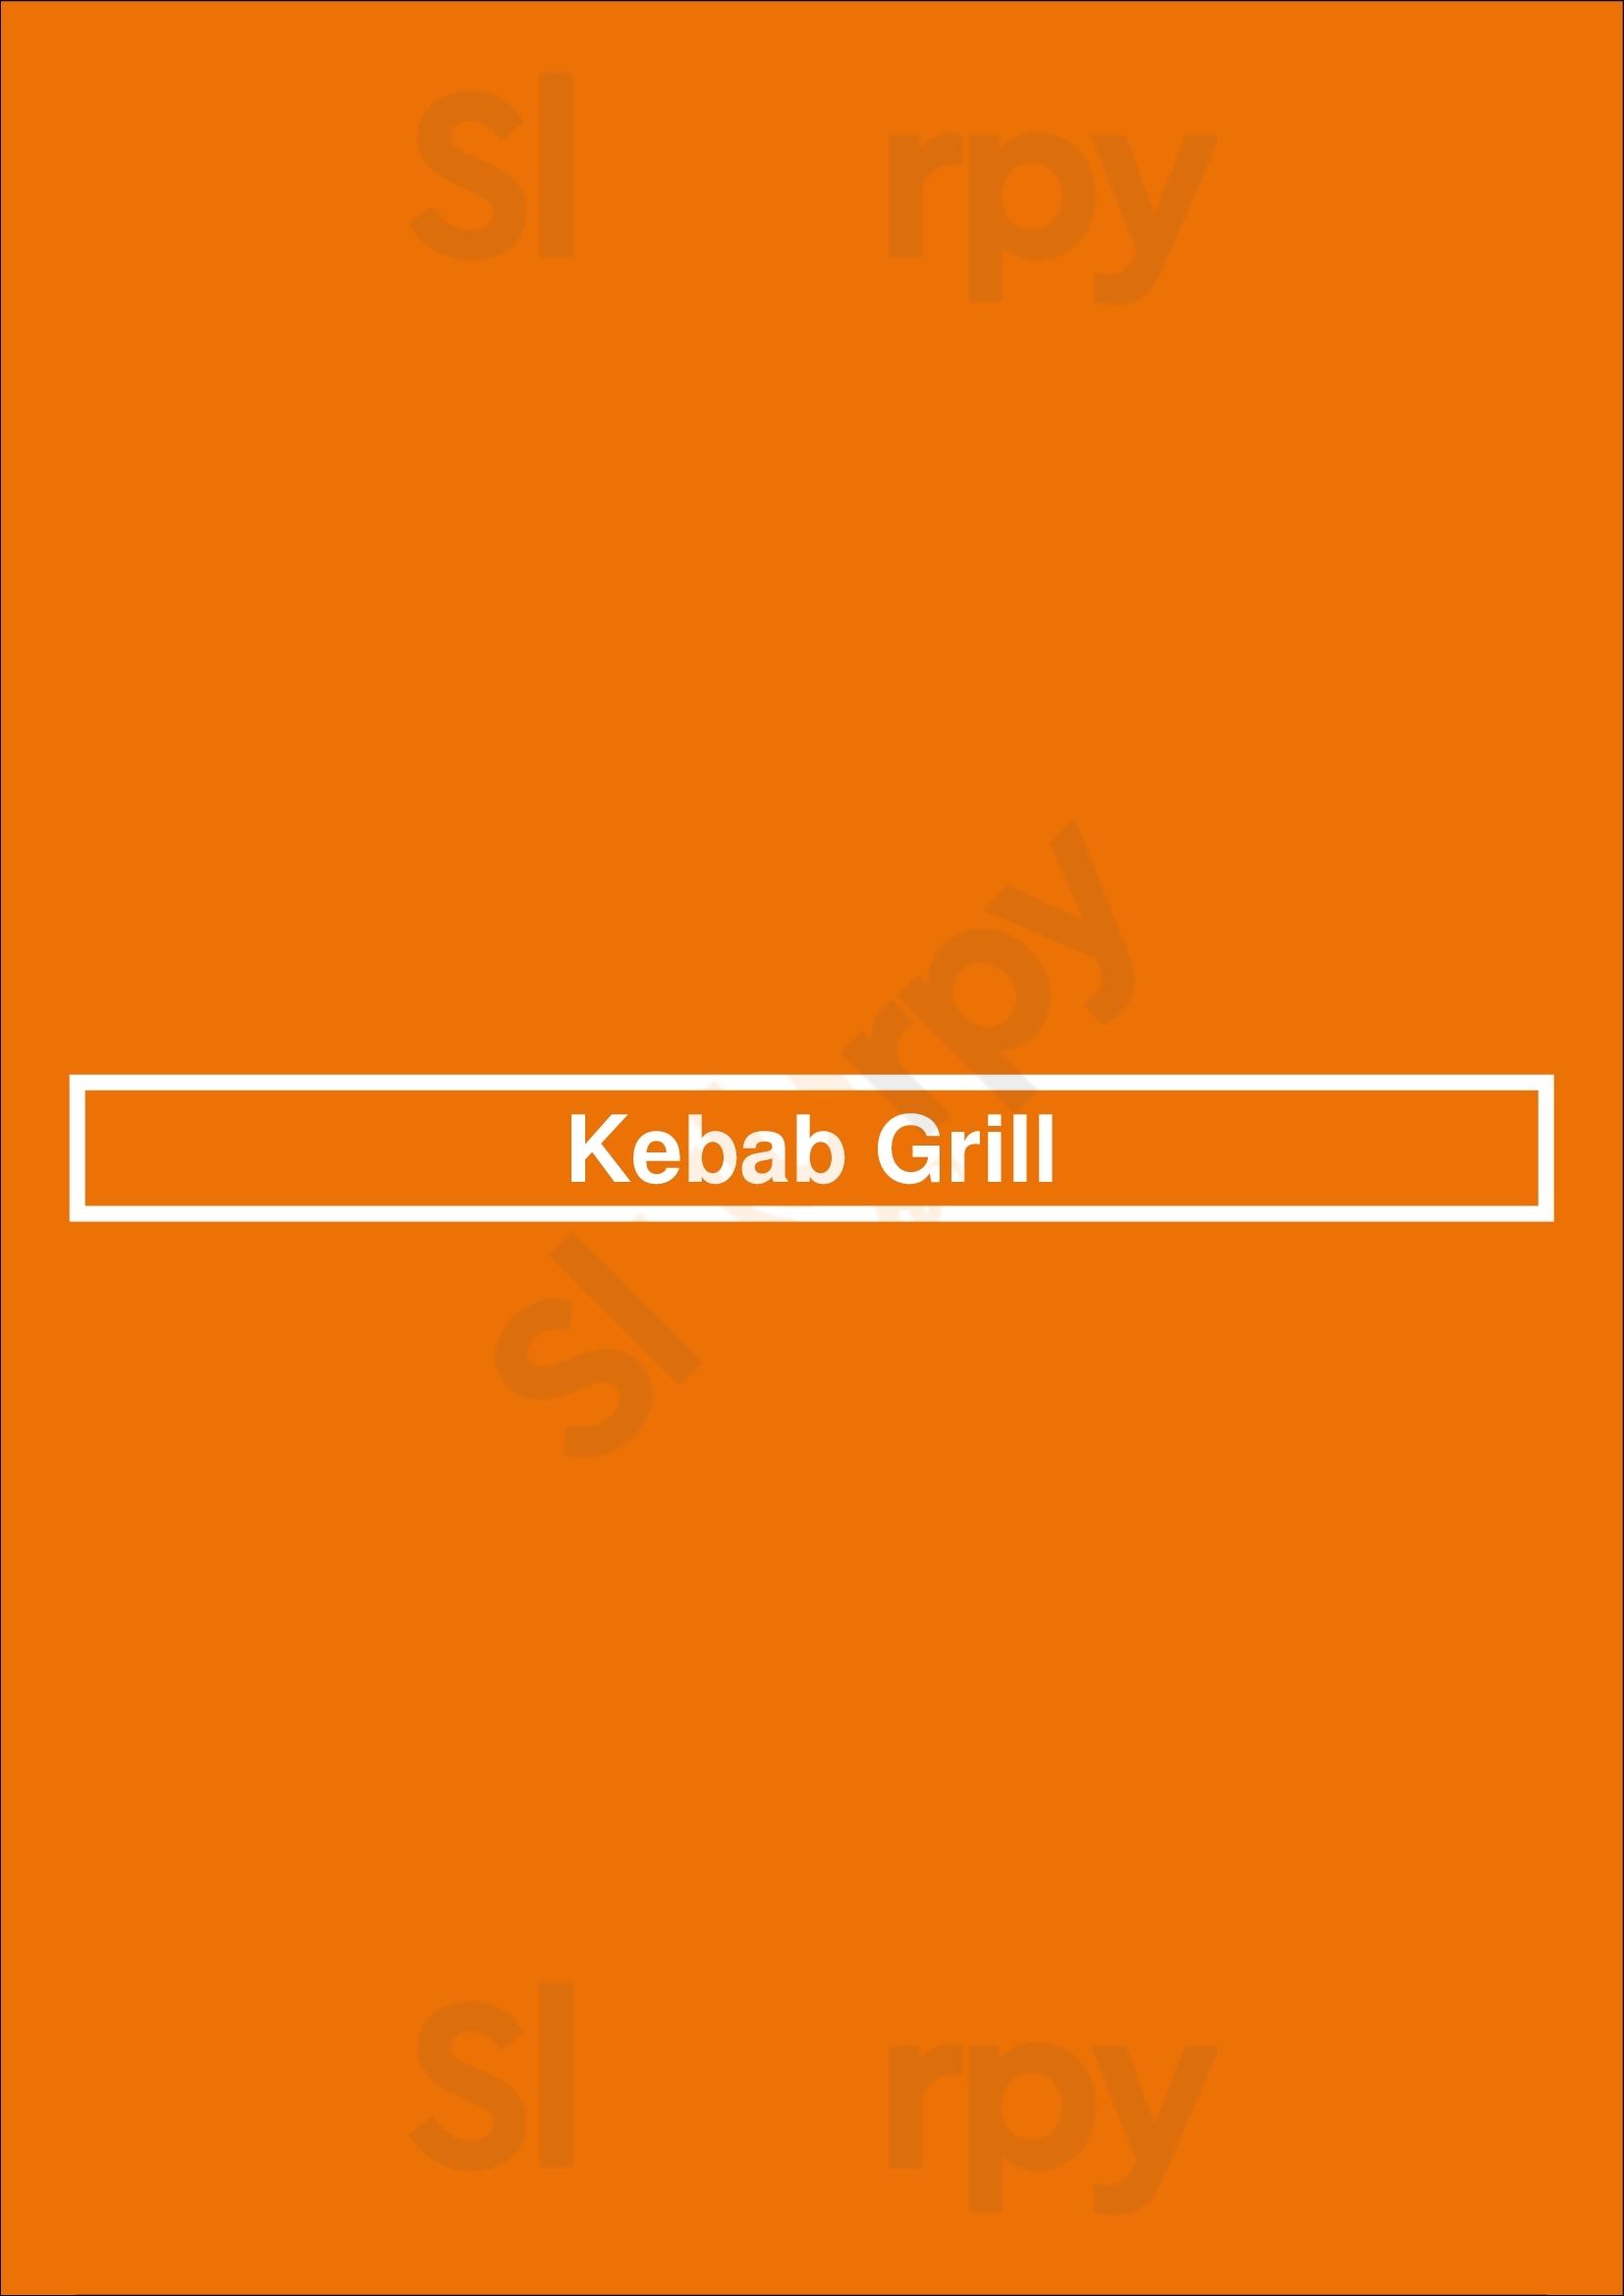 Kebab Grill La Jolla Menu - 1